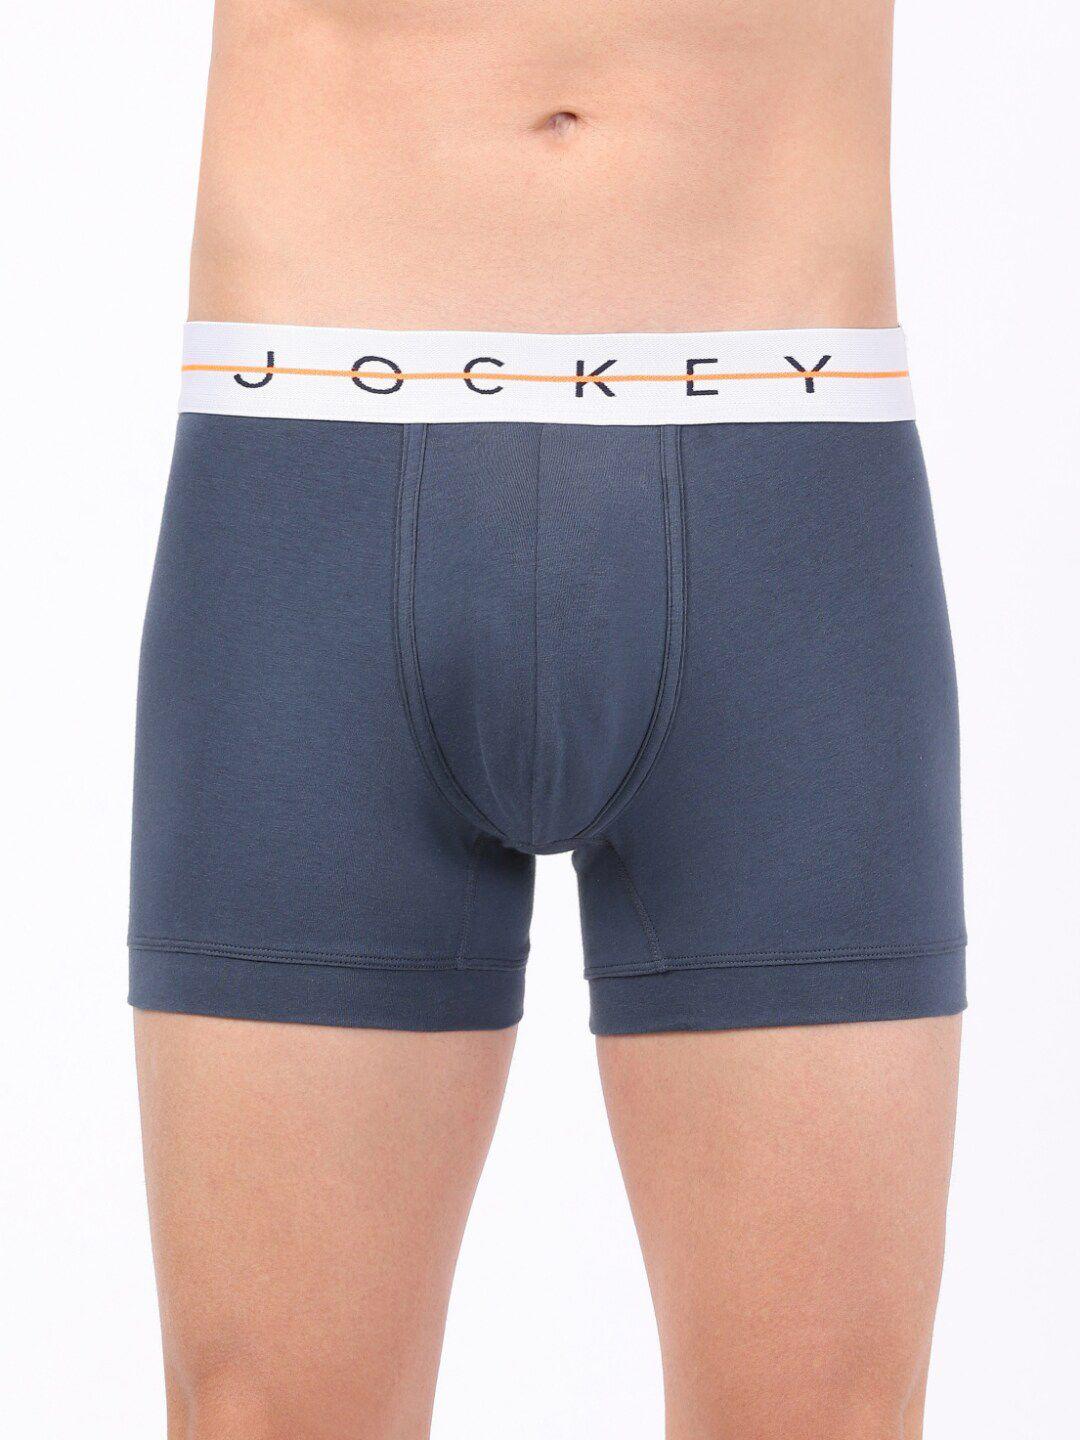 jockey-men-super-combed-cotton-trunk-ny16